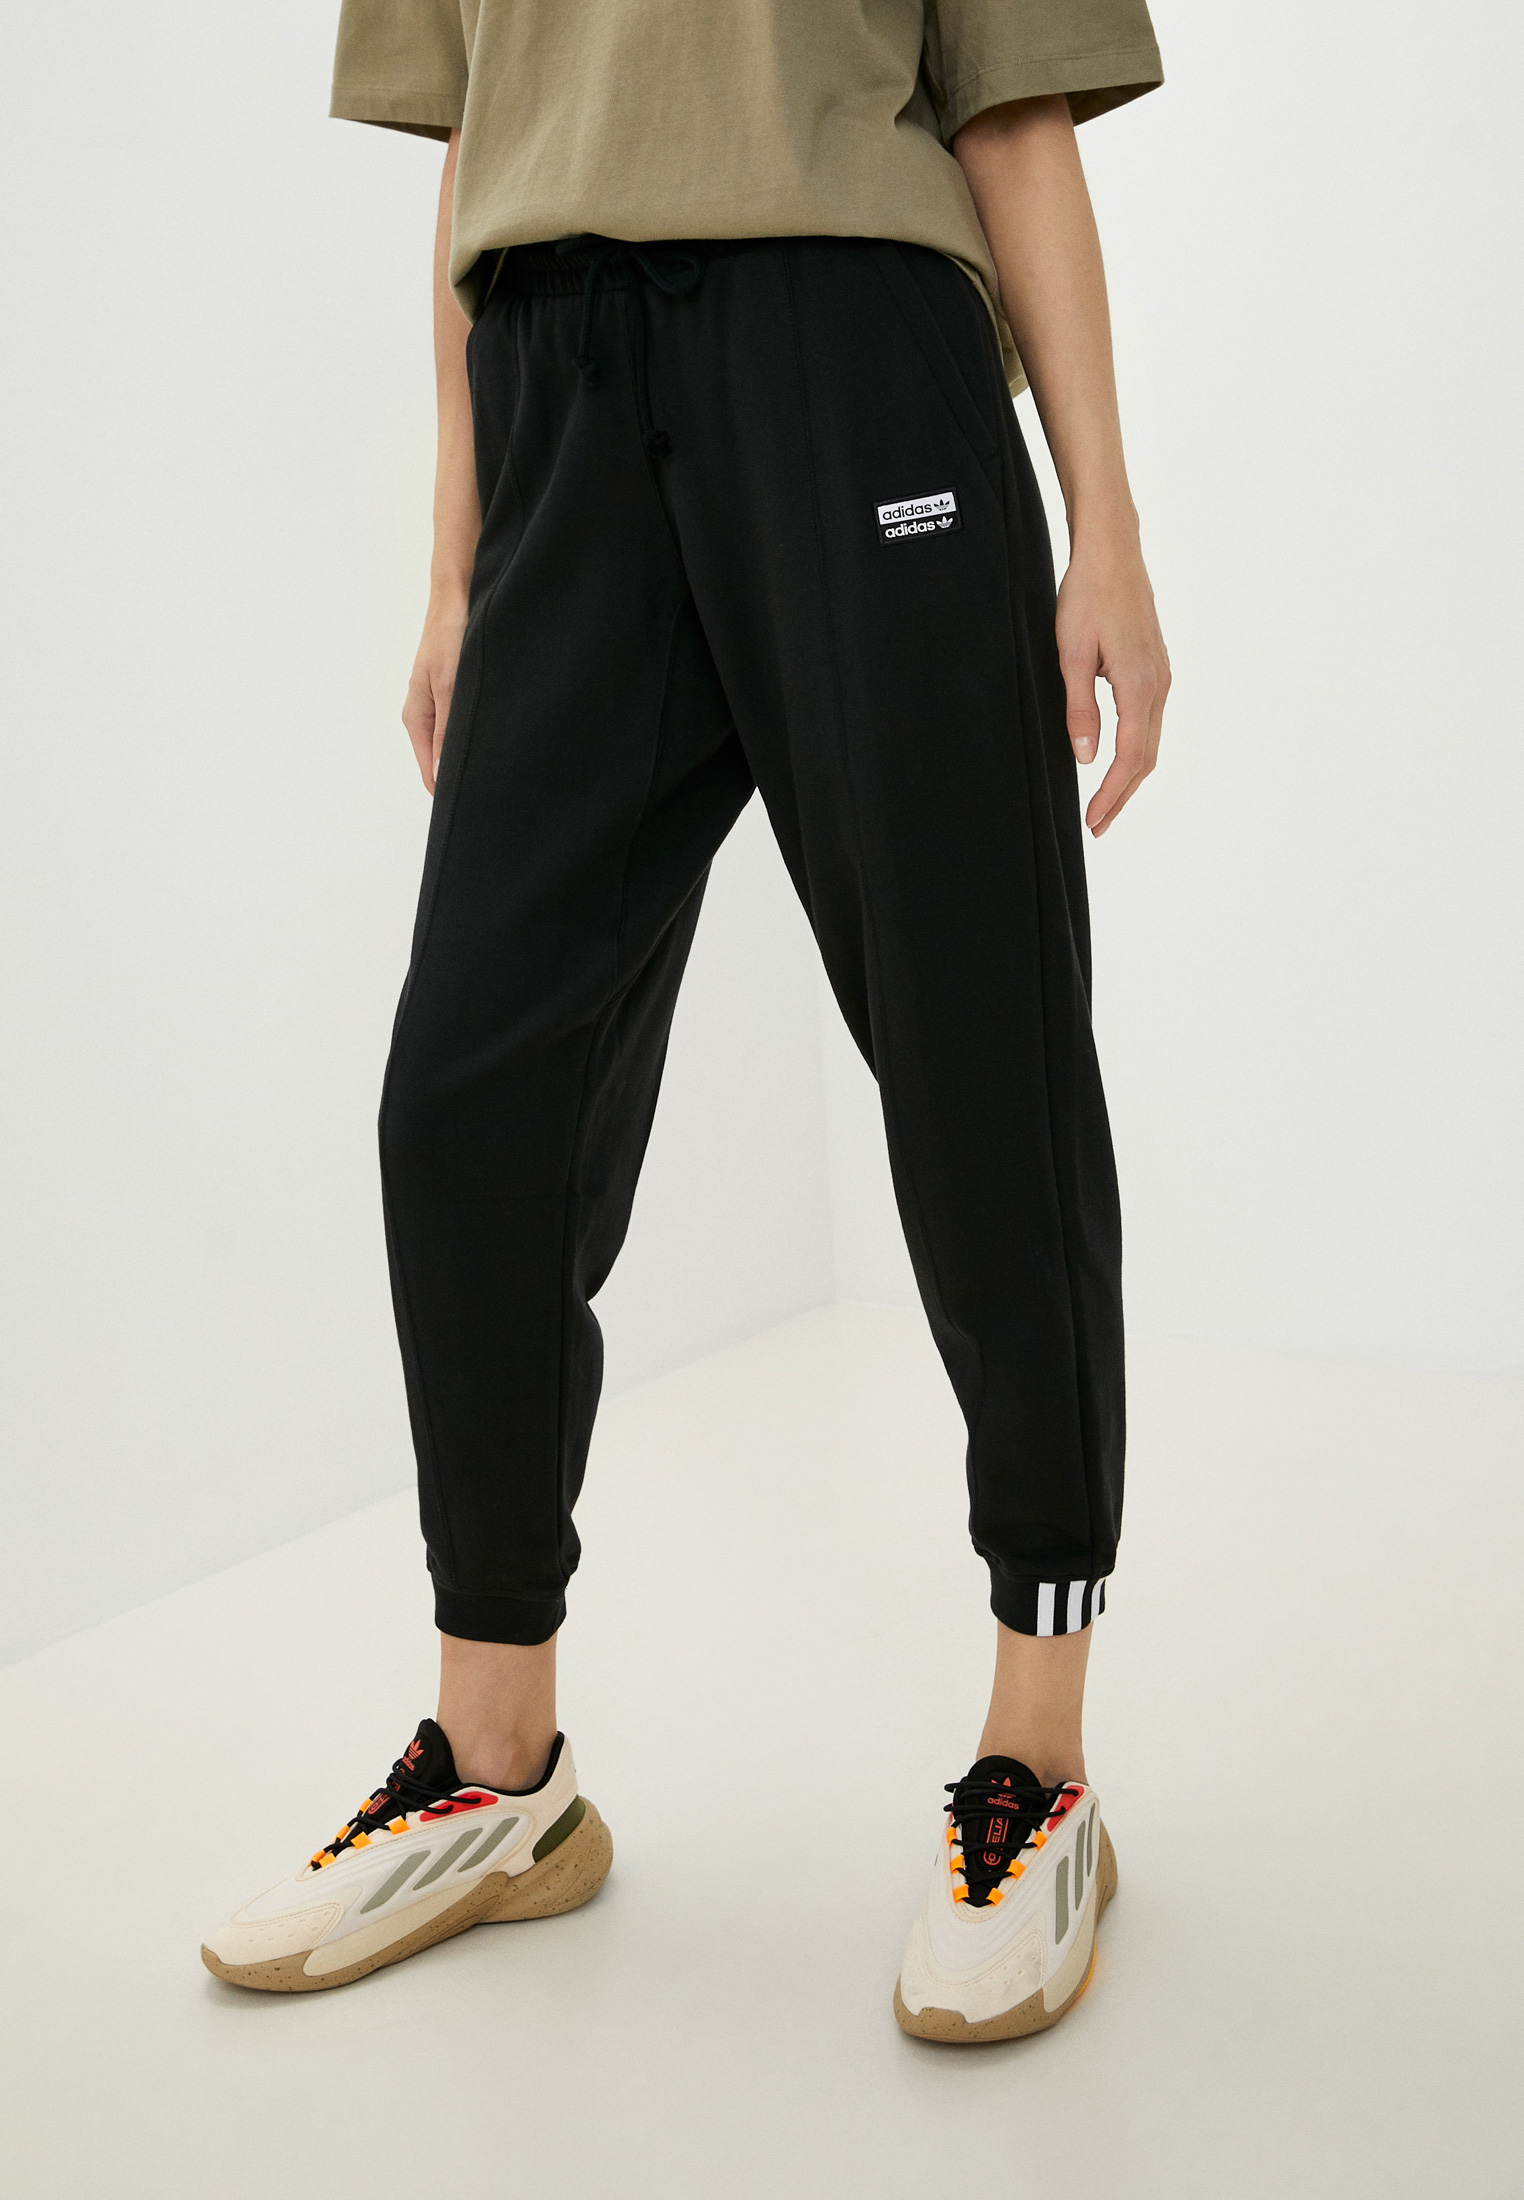 Женские брюки Adidas Originals (Адидас Ориджиналс) GD3092 купить